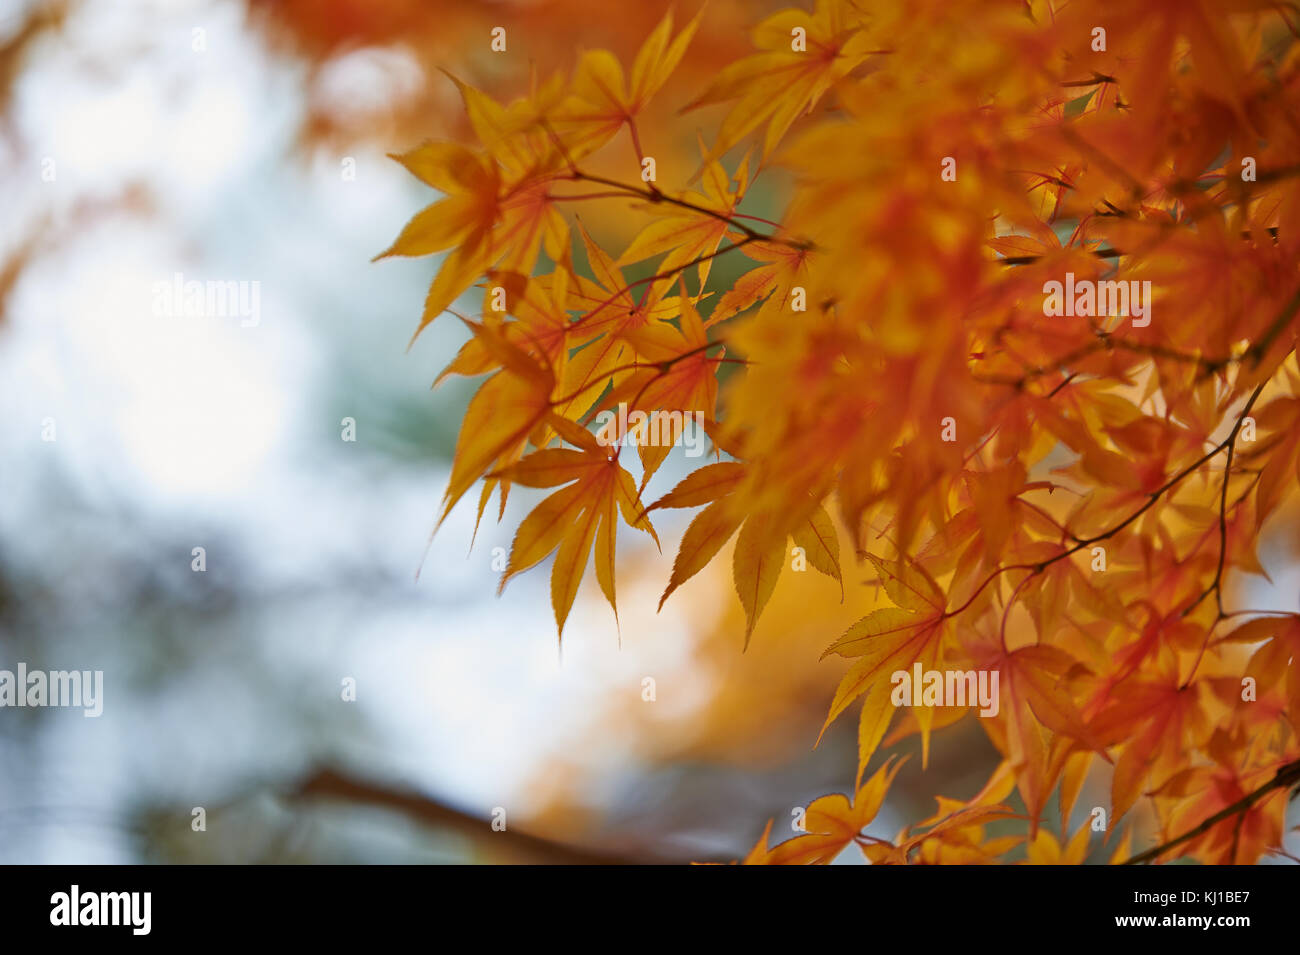 Magical autumn foliage at Soraksan National Park Stock Photo